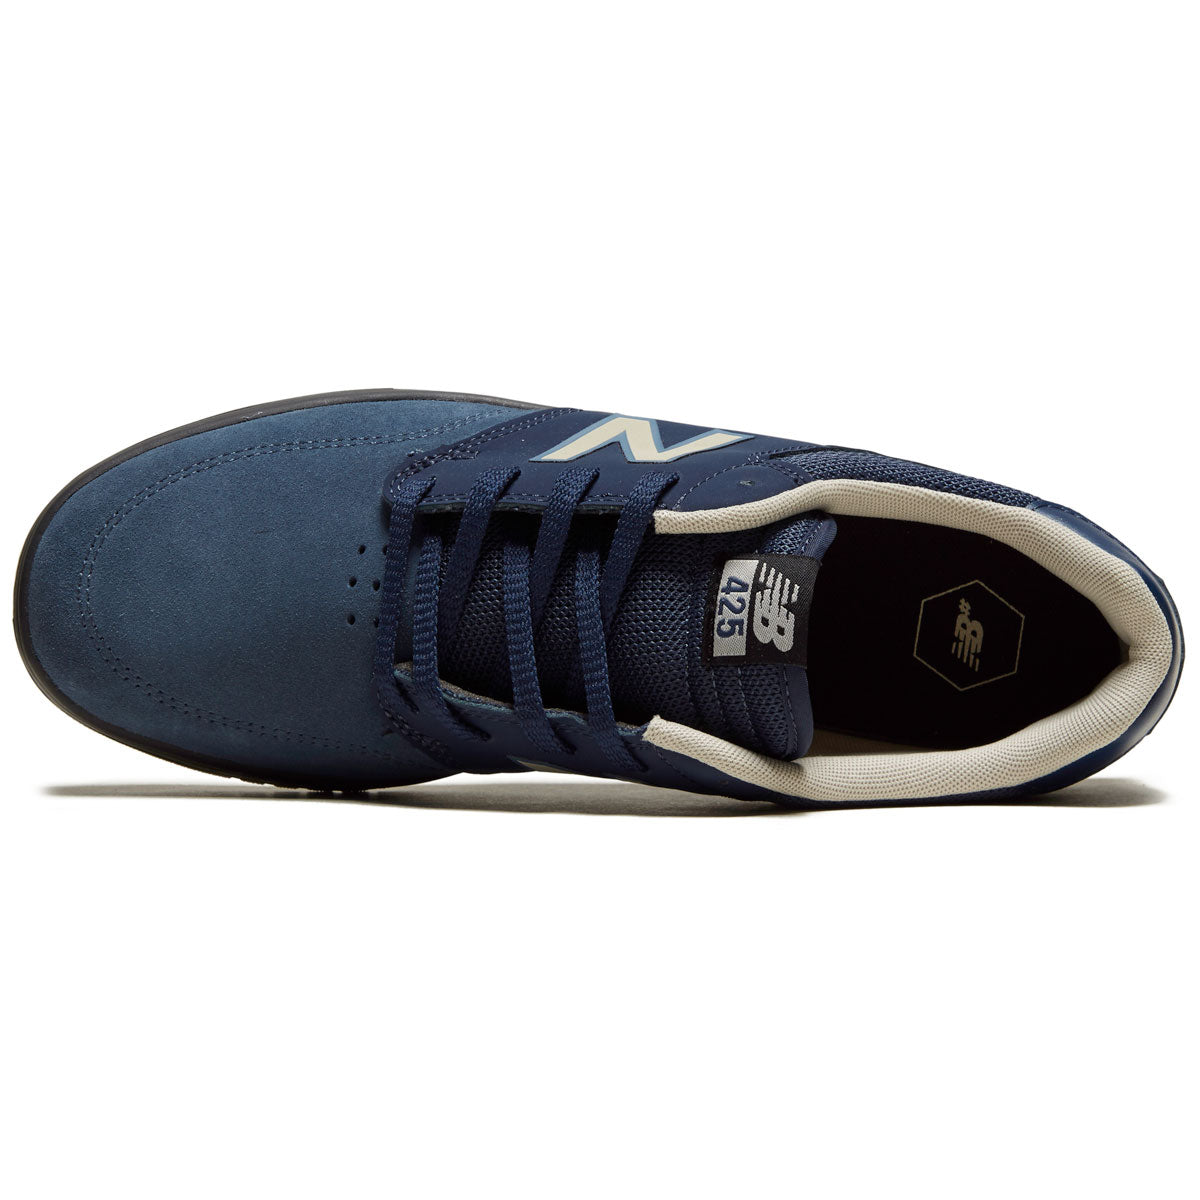 New Balance 425 Shoes - Navy/Black image 3